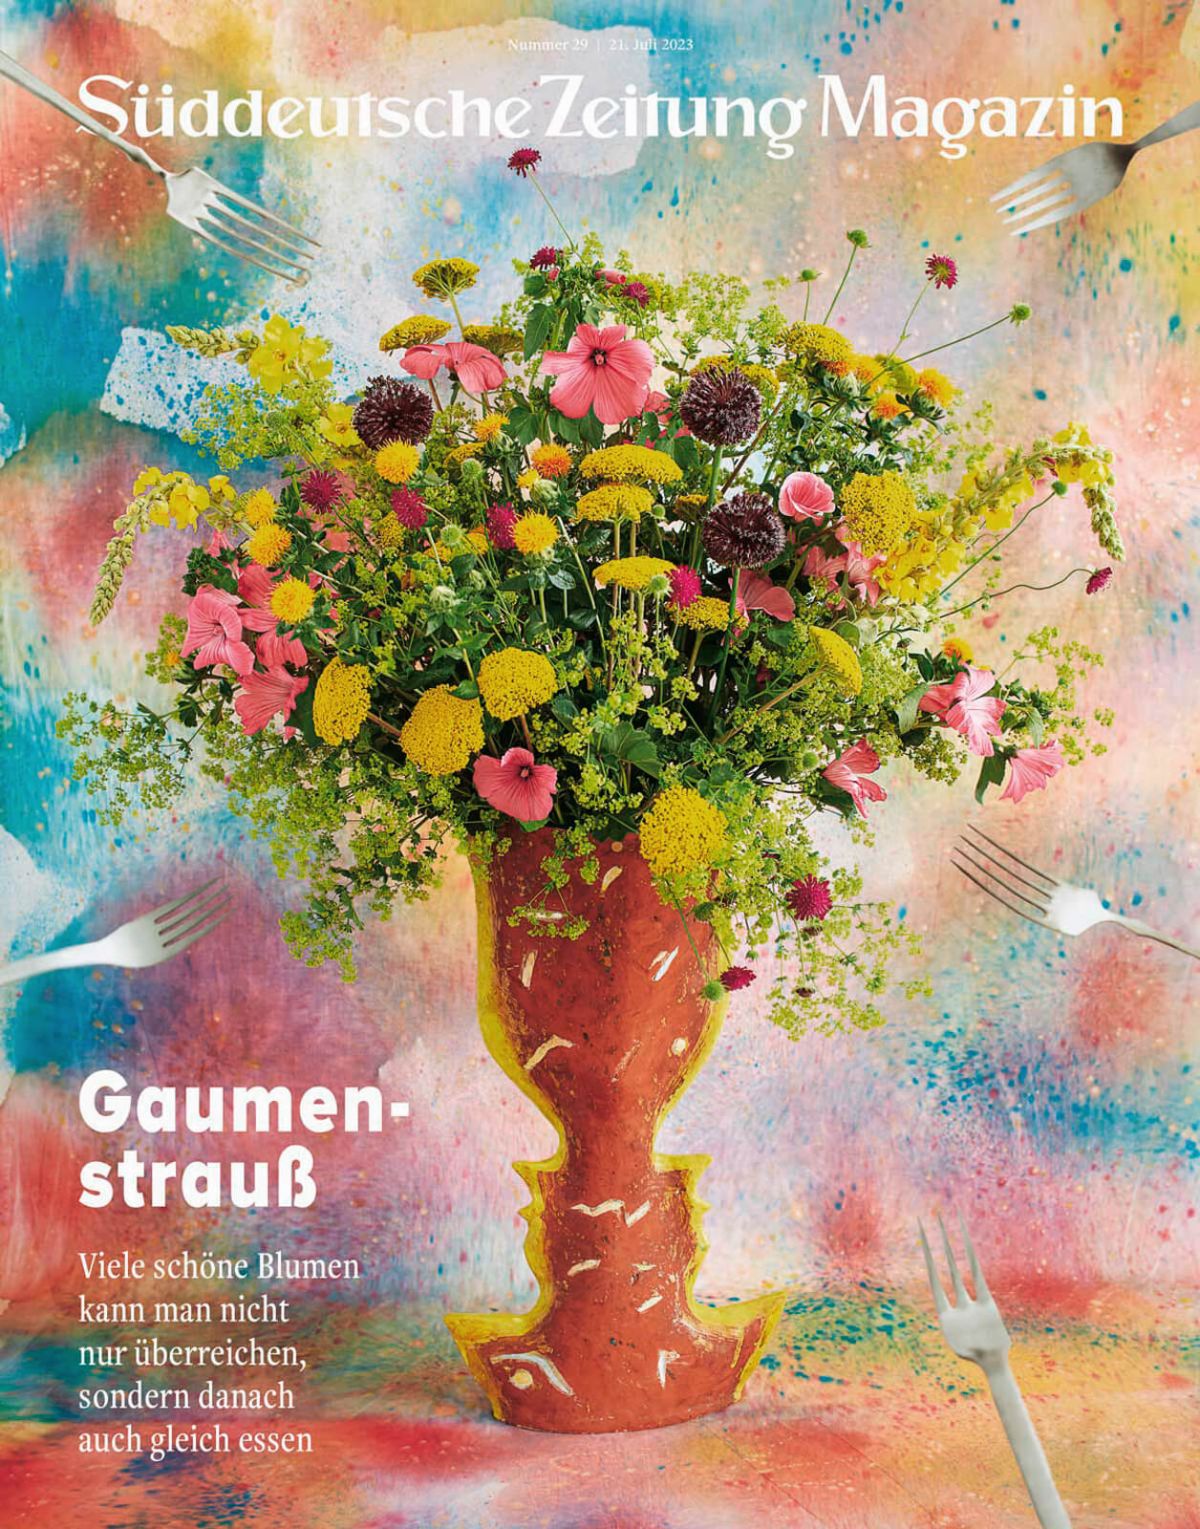 SZ Magazin - Essbare Blumen